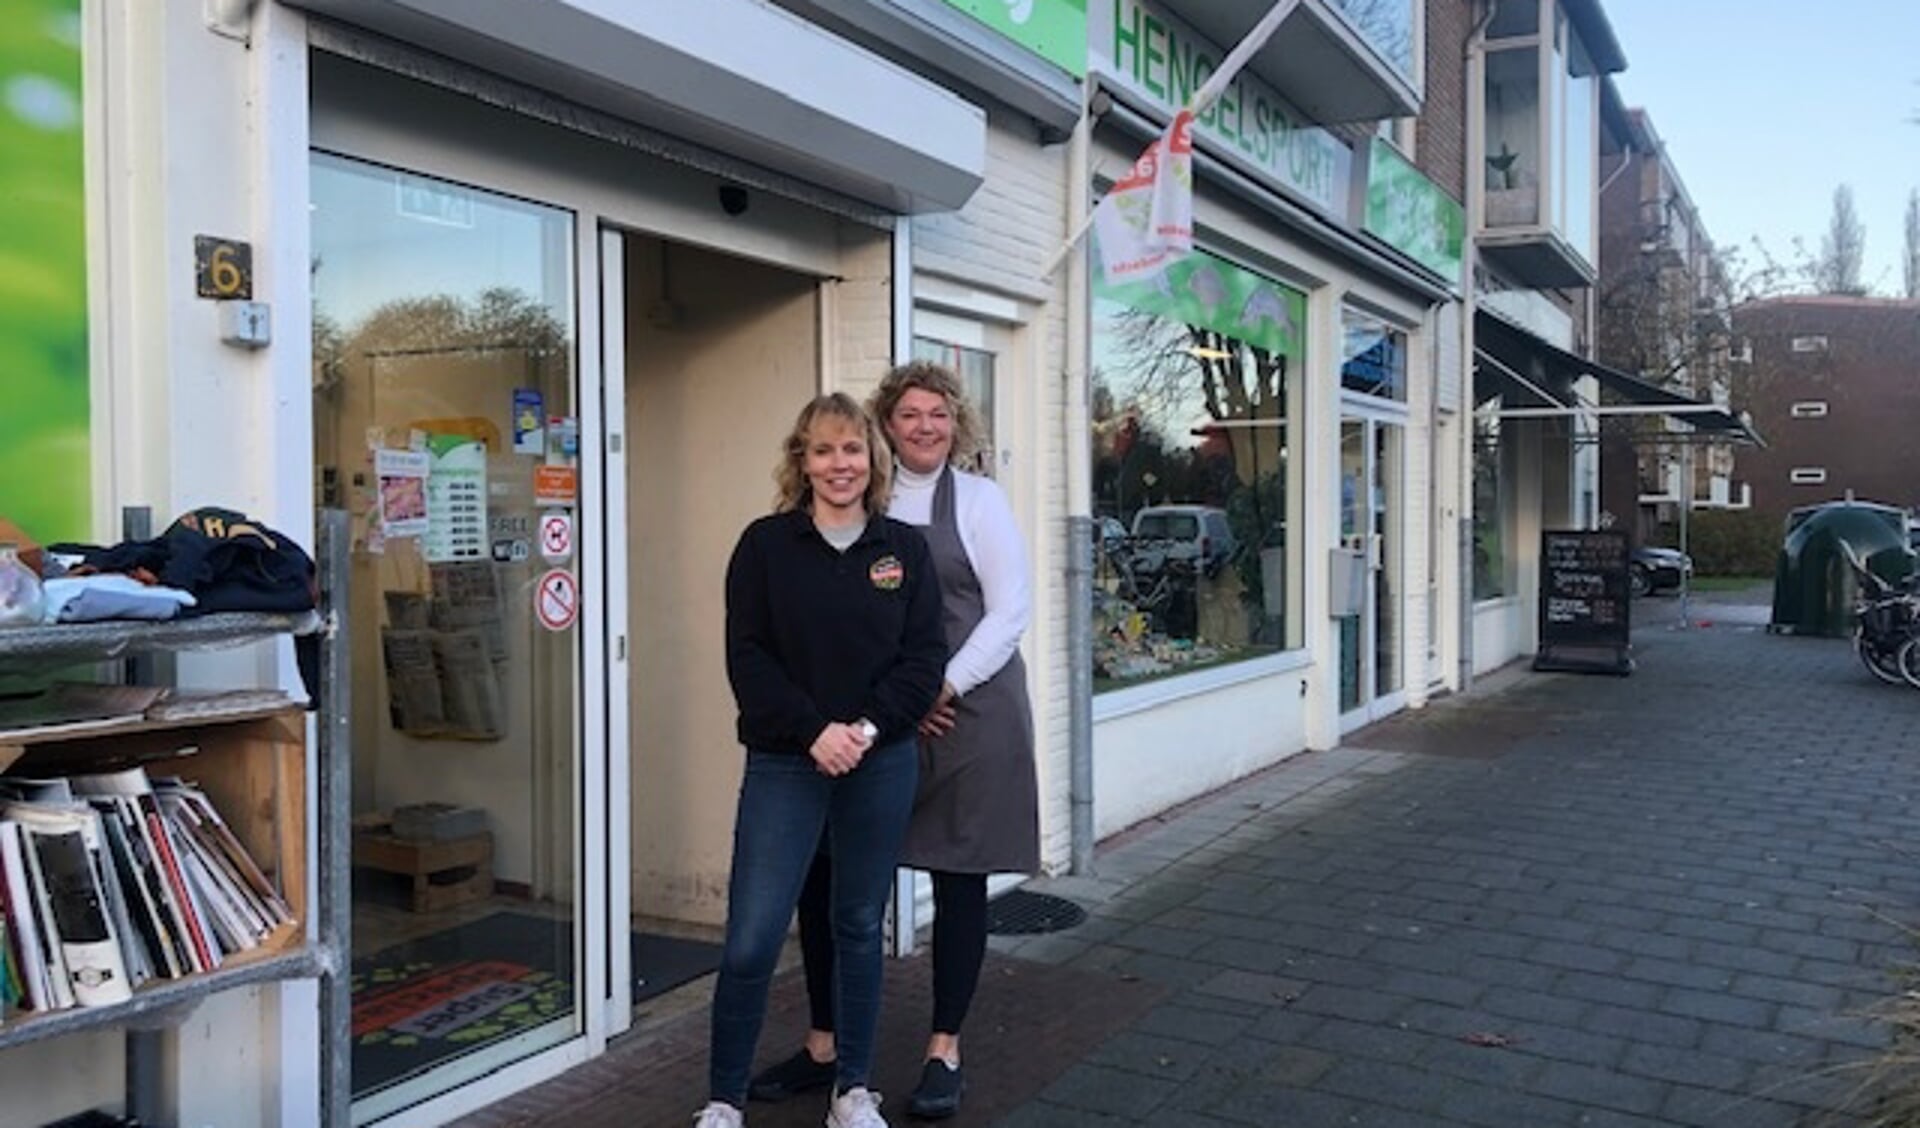 De timing van de werkzaamheden aan hun straat kon niet beroerder, zeggen de winkeliers Karin Arbon (l) en Annemieke Broodbakker. 